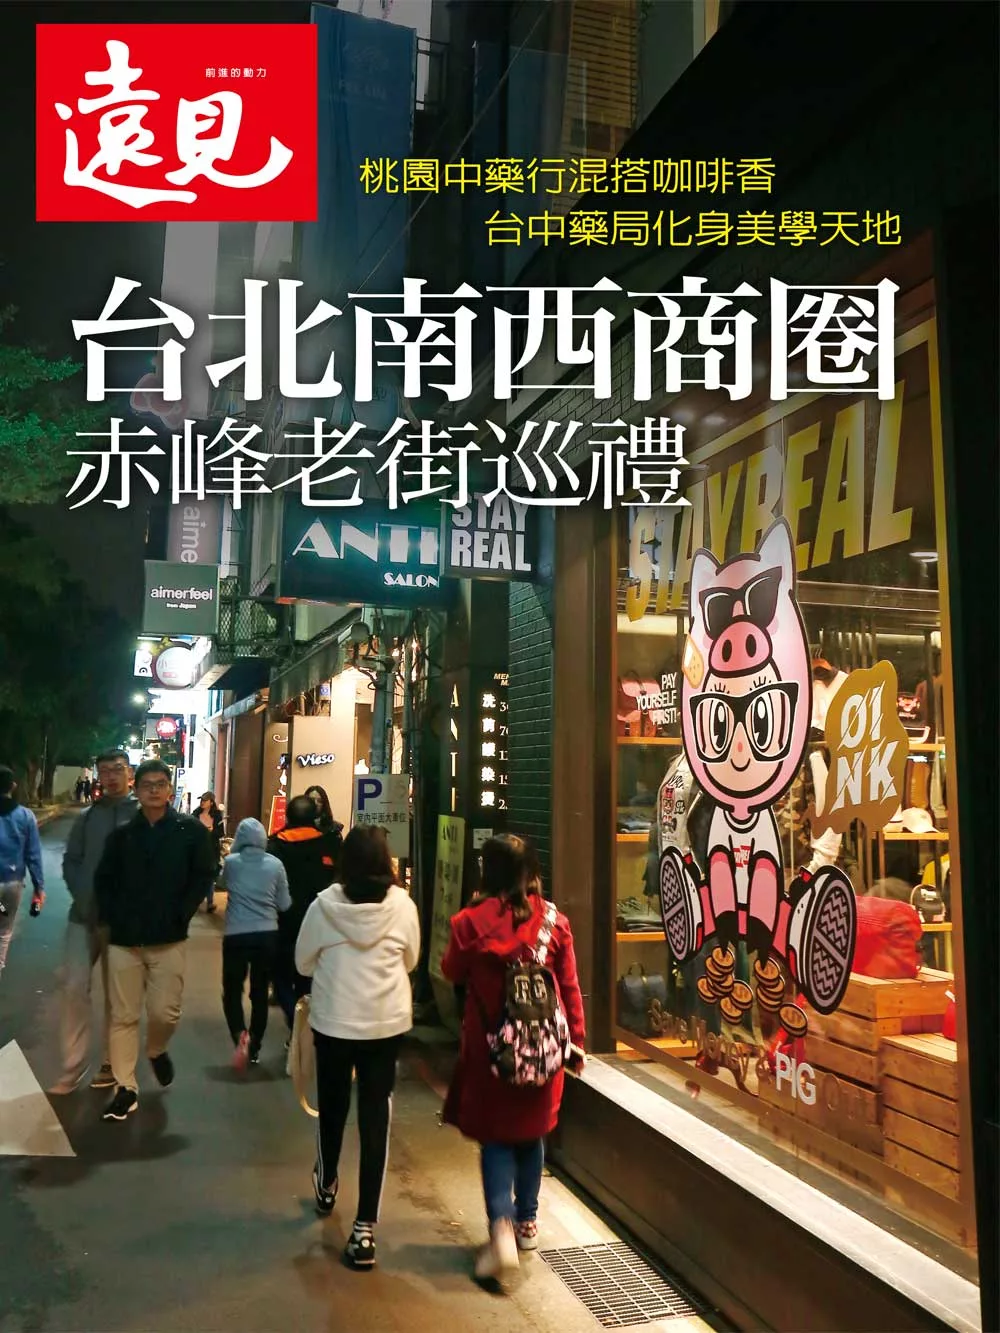 遠見 台北南西商圈 赤峰老街巡禮 (電子雜誌)